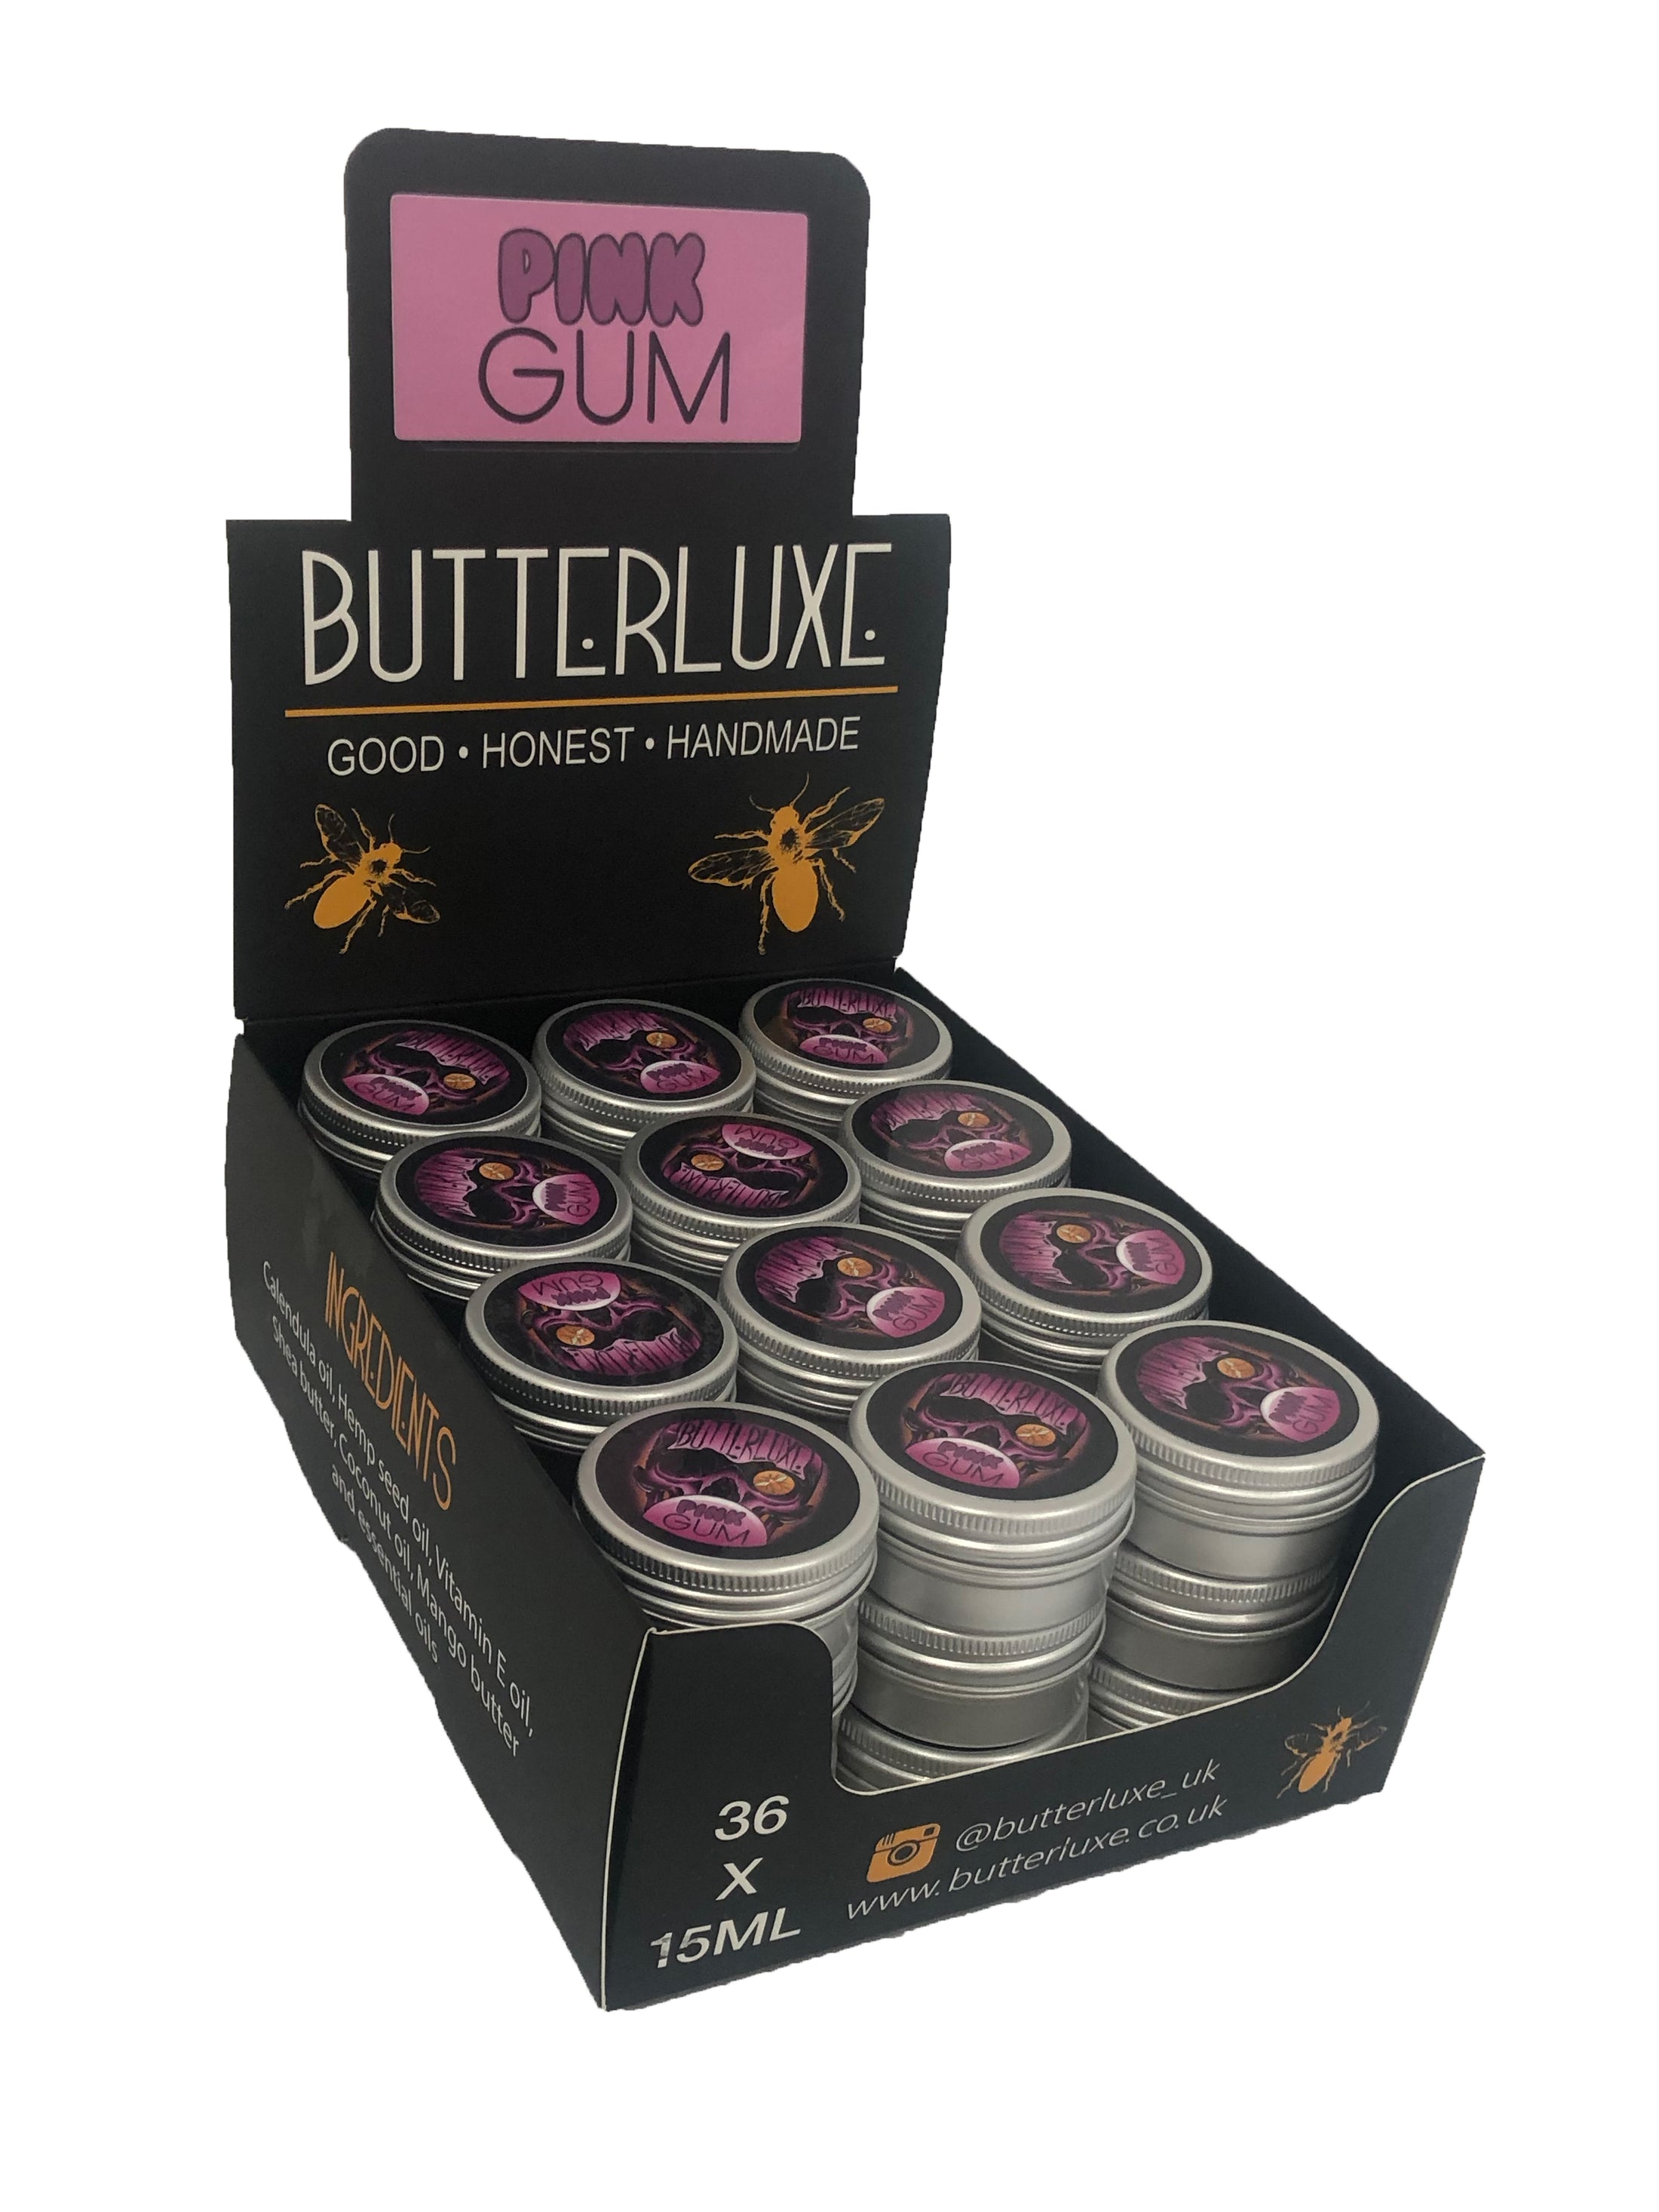 PINK GUM BALM – Butterluxe Limited